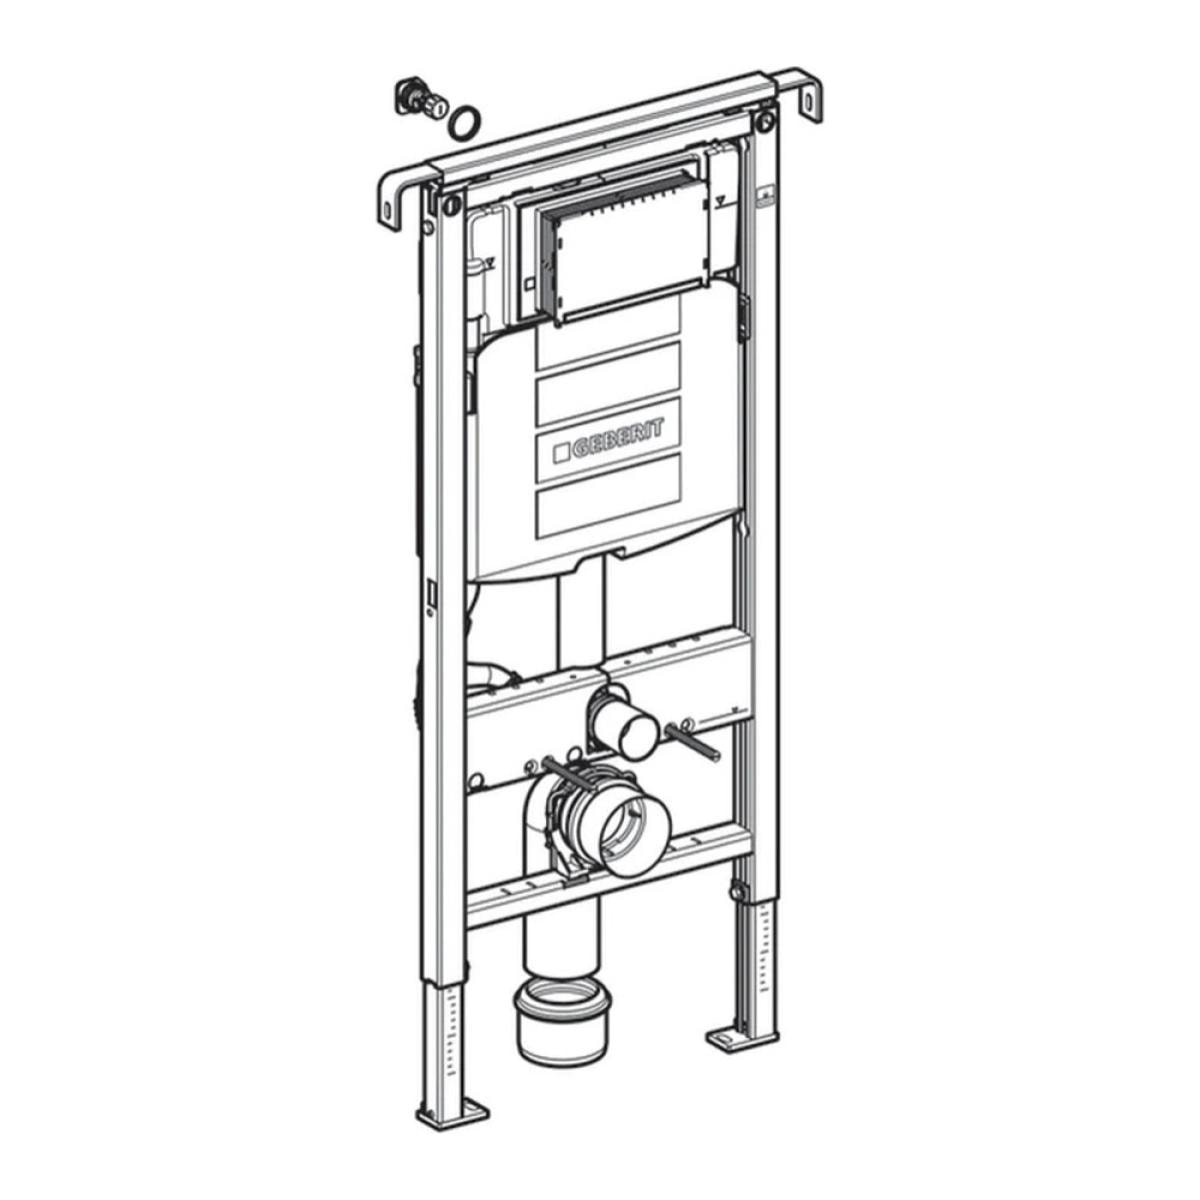 Bâti-support Geberit Duofix pour WC suspendu, 112 cm, avec réservoi